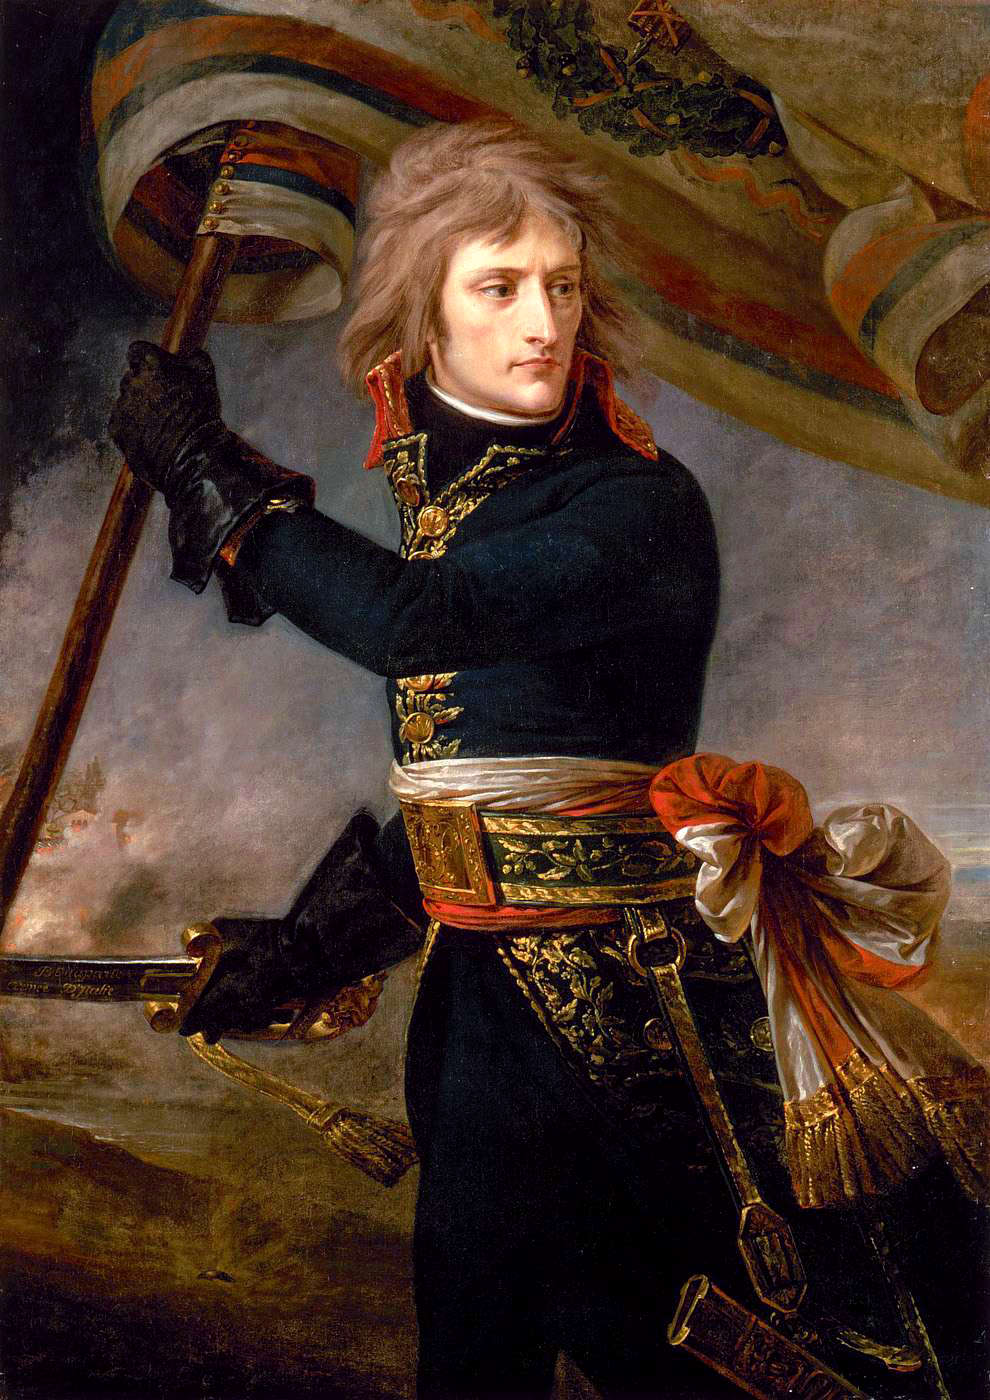 Un soldat de la Révolution (1789-1799)